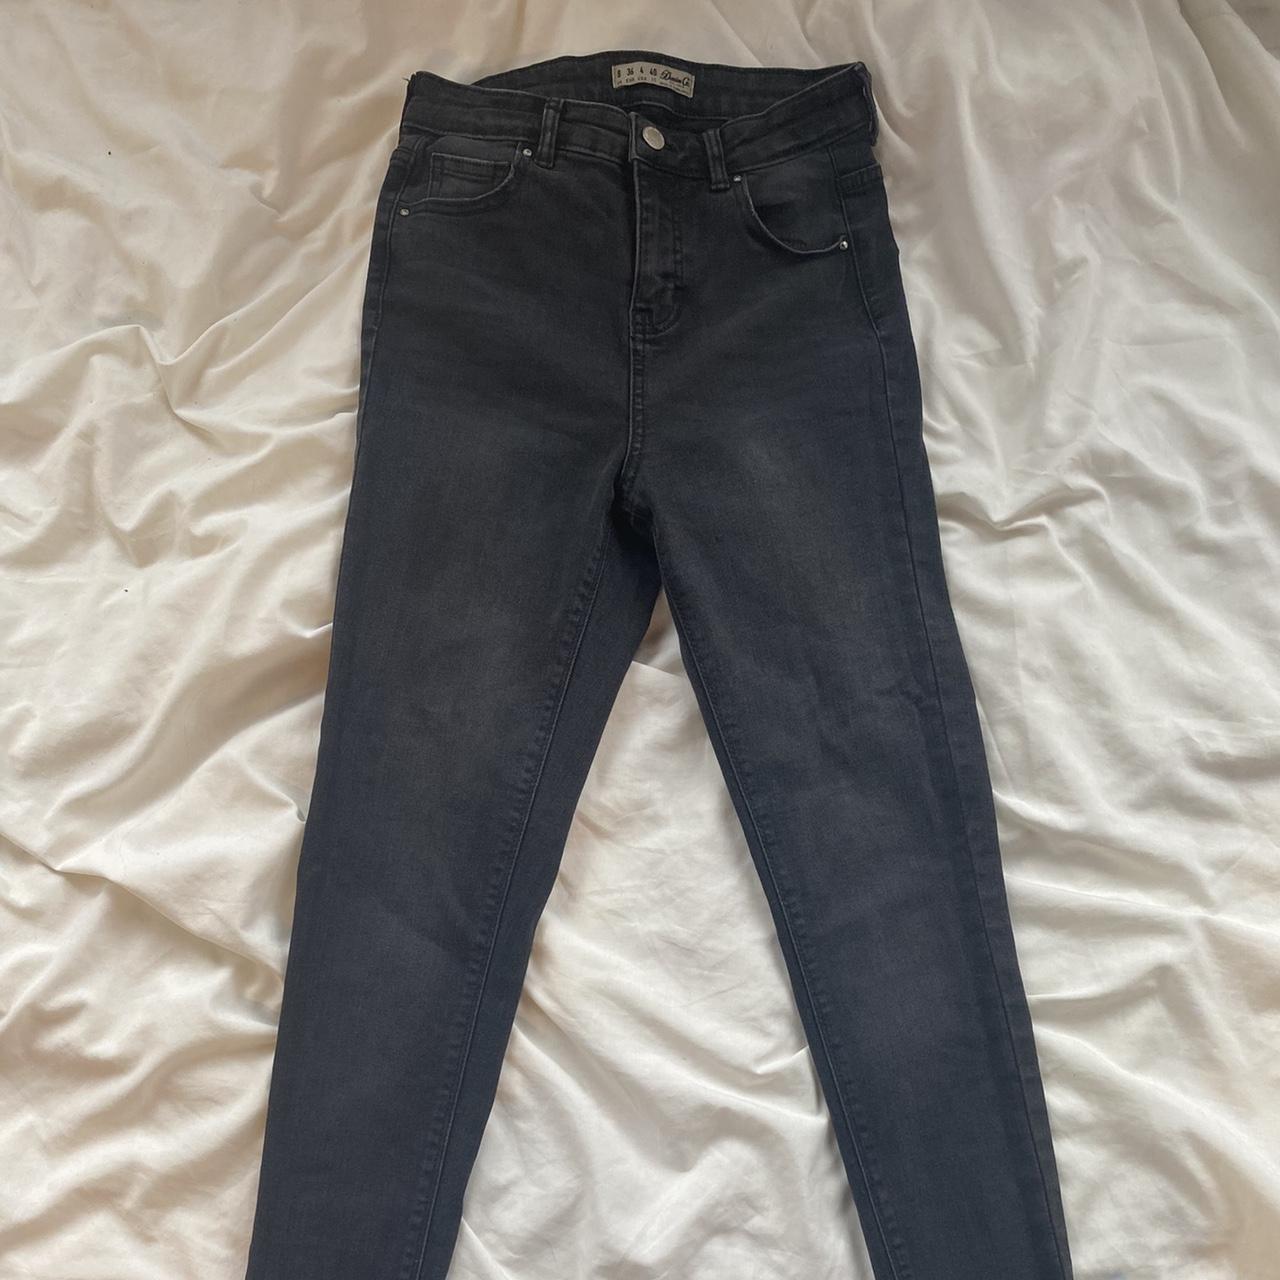 Primark black skinny jeans size 8 high waisted - Depop